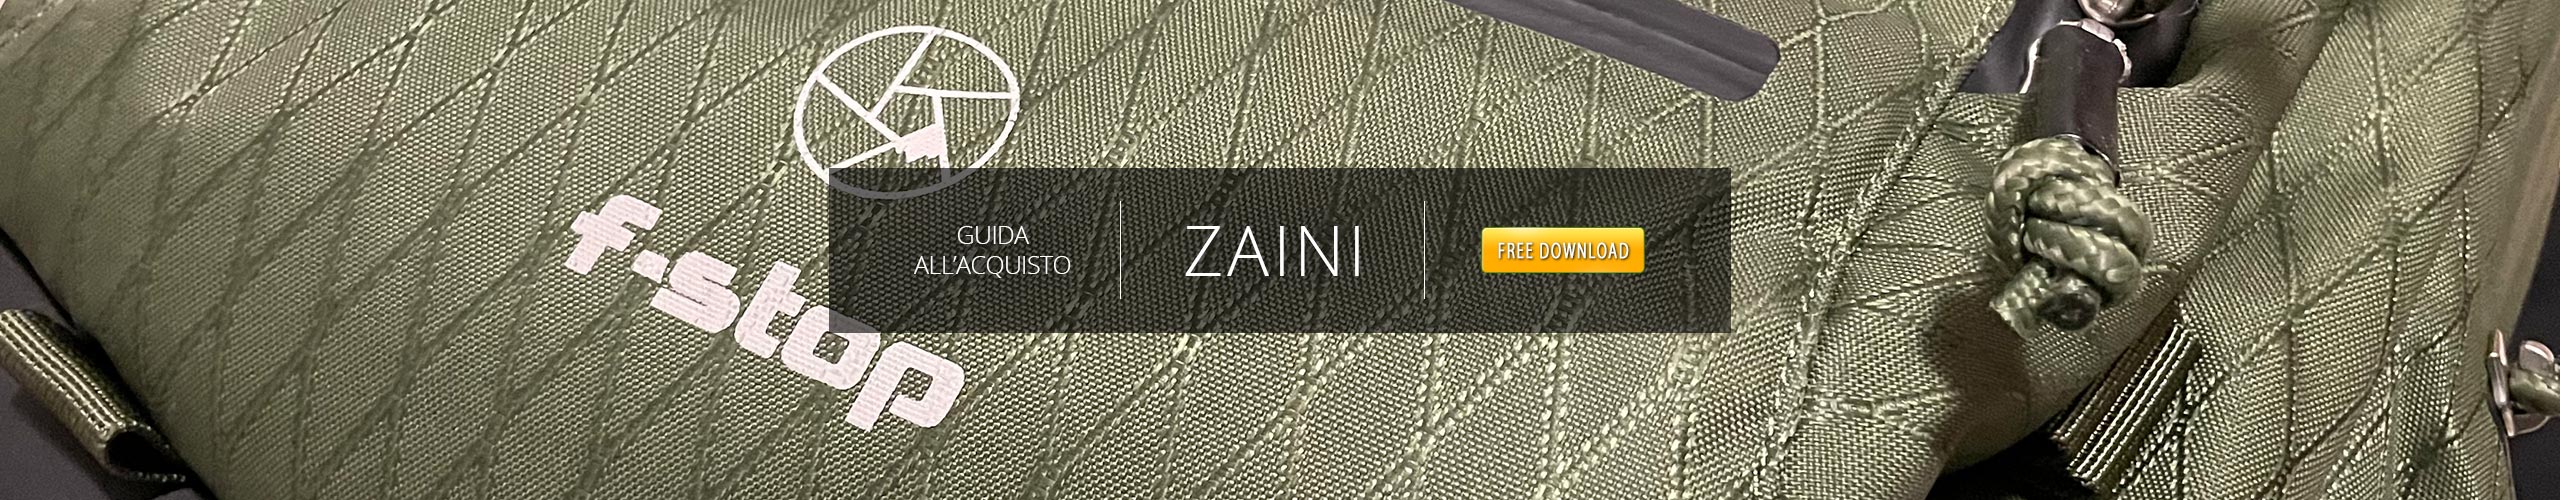 20 12 01 Banner Guida Zaini